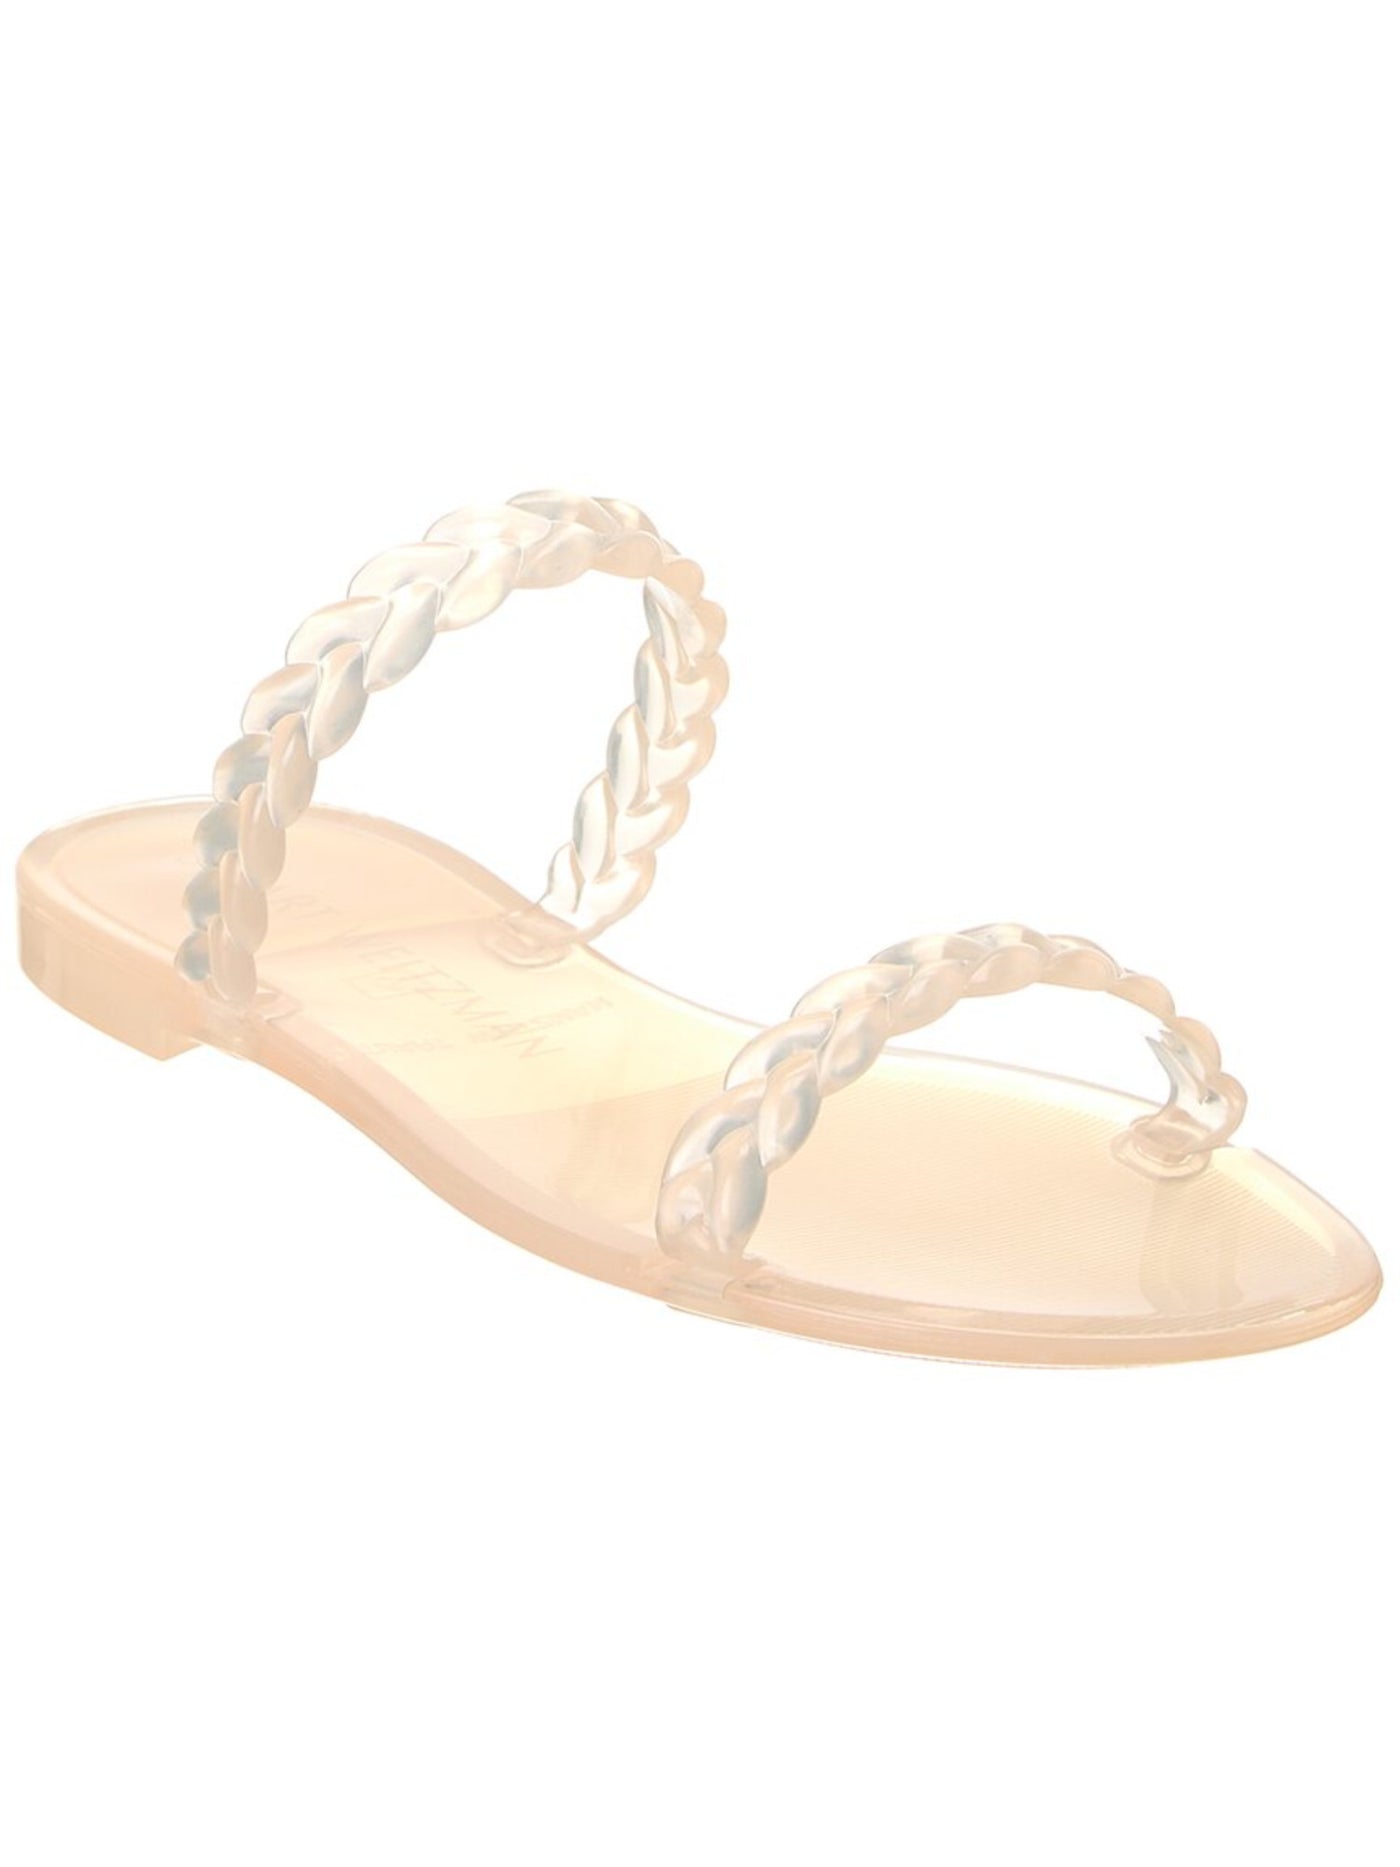 STUART WEITZMAN Womens Beige Braided Strappy Sawyer Round Toe Slip On Slide Sandals Shoes 10 M